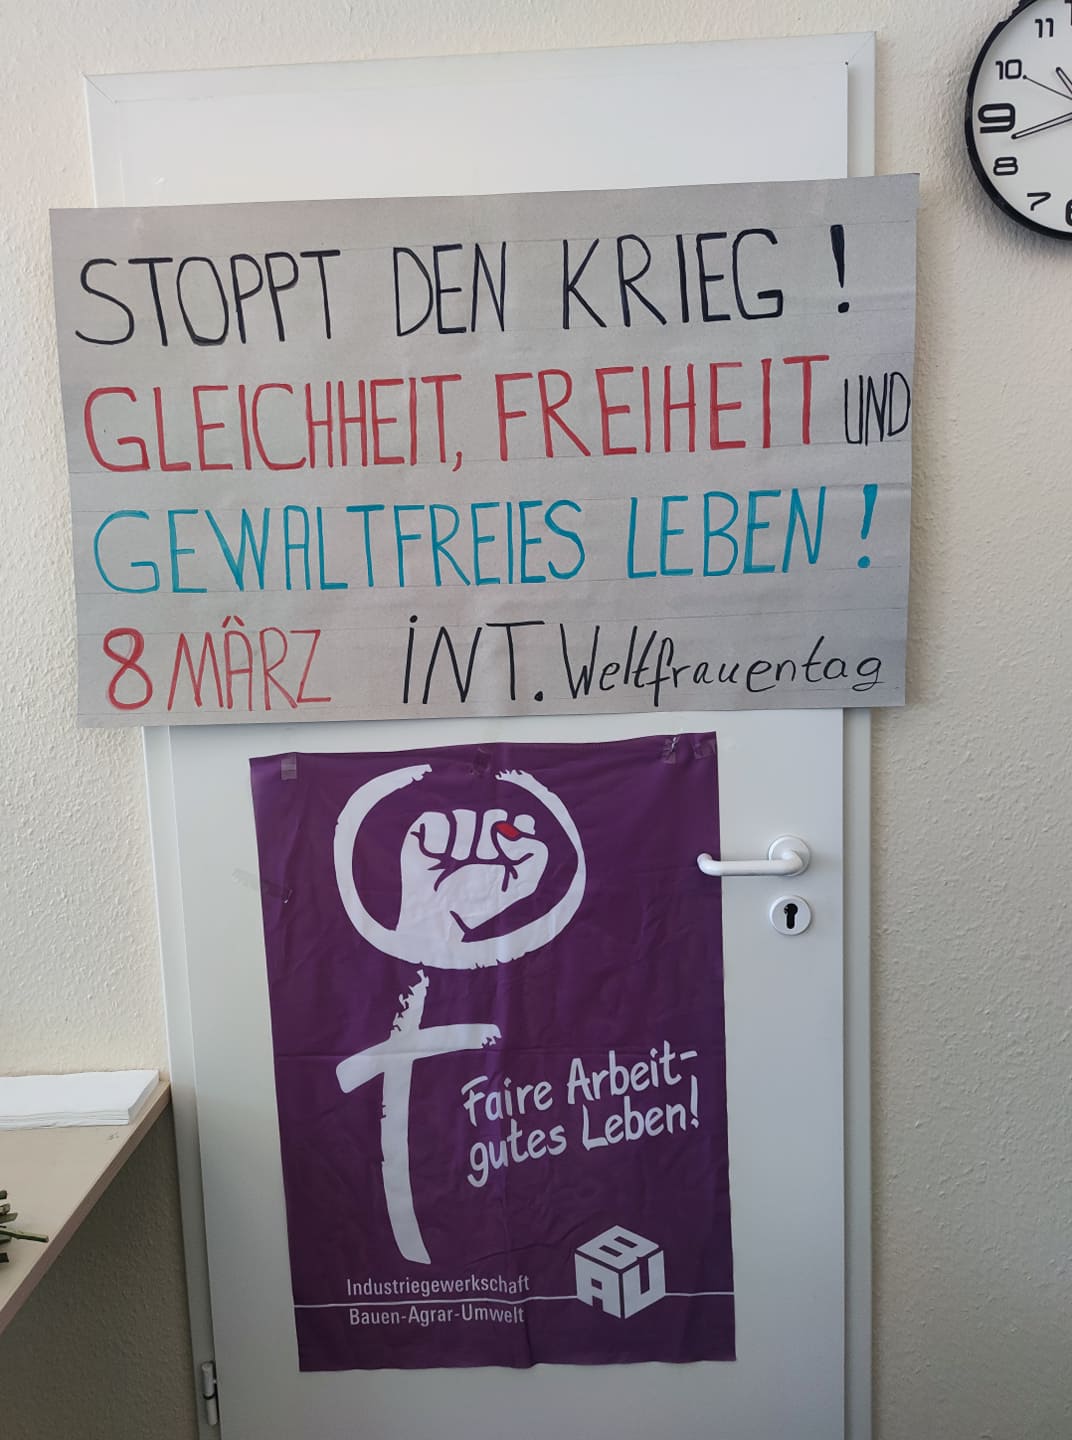 Frauentag: Betriebliche Aktionen am 8.März am Airport Düsseldorf!